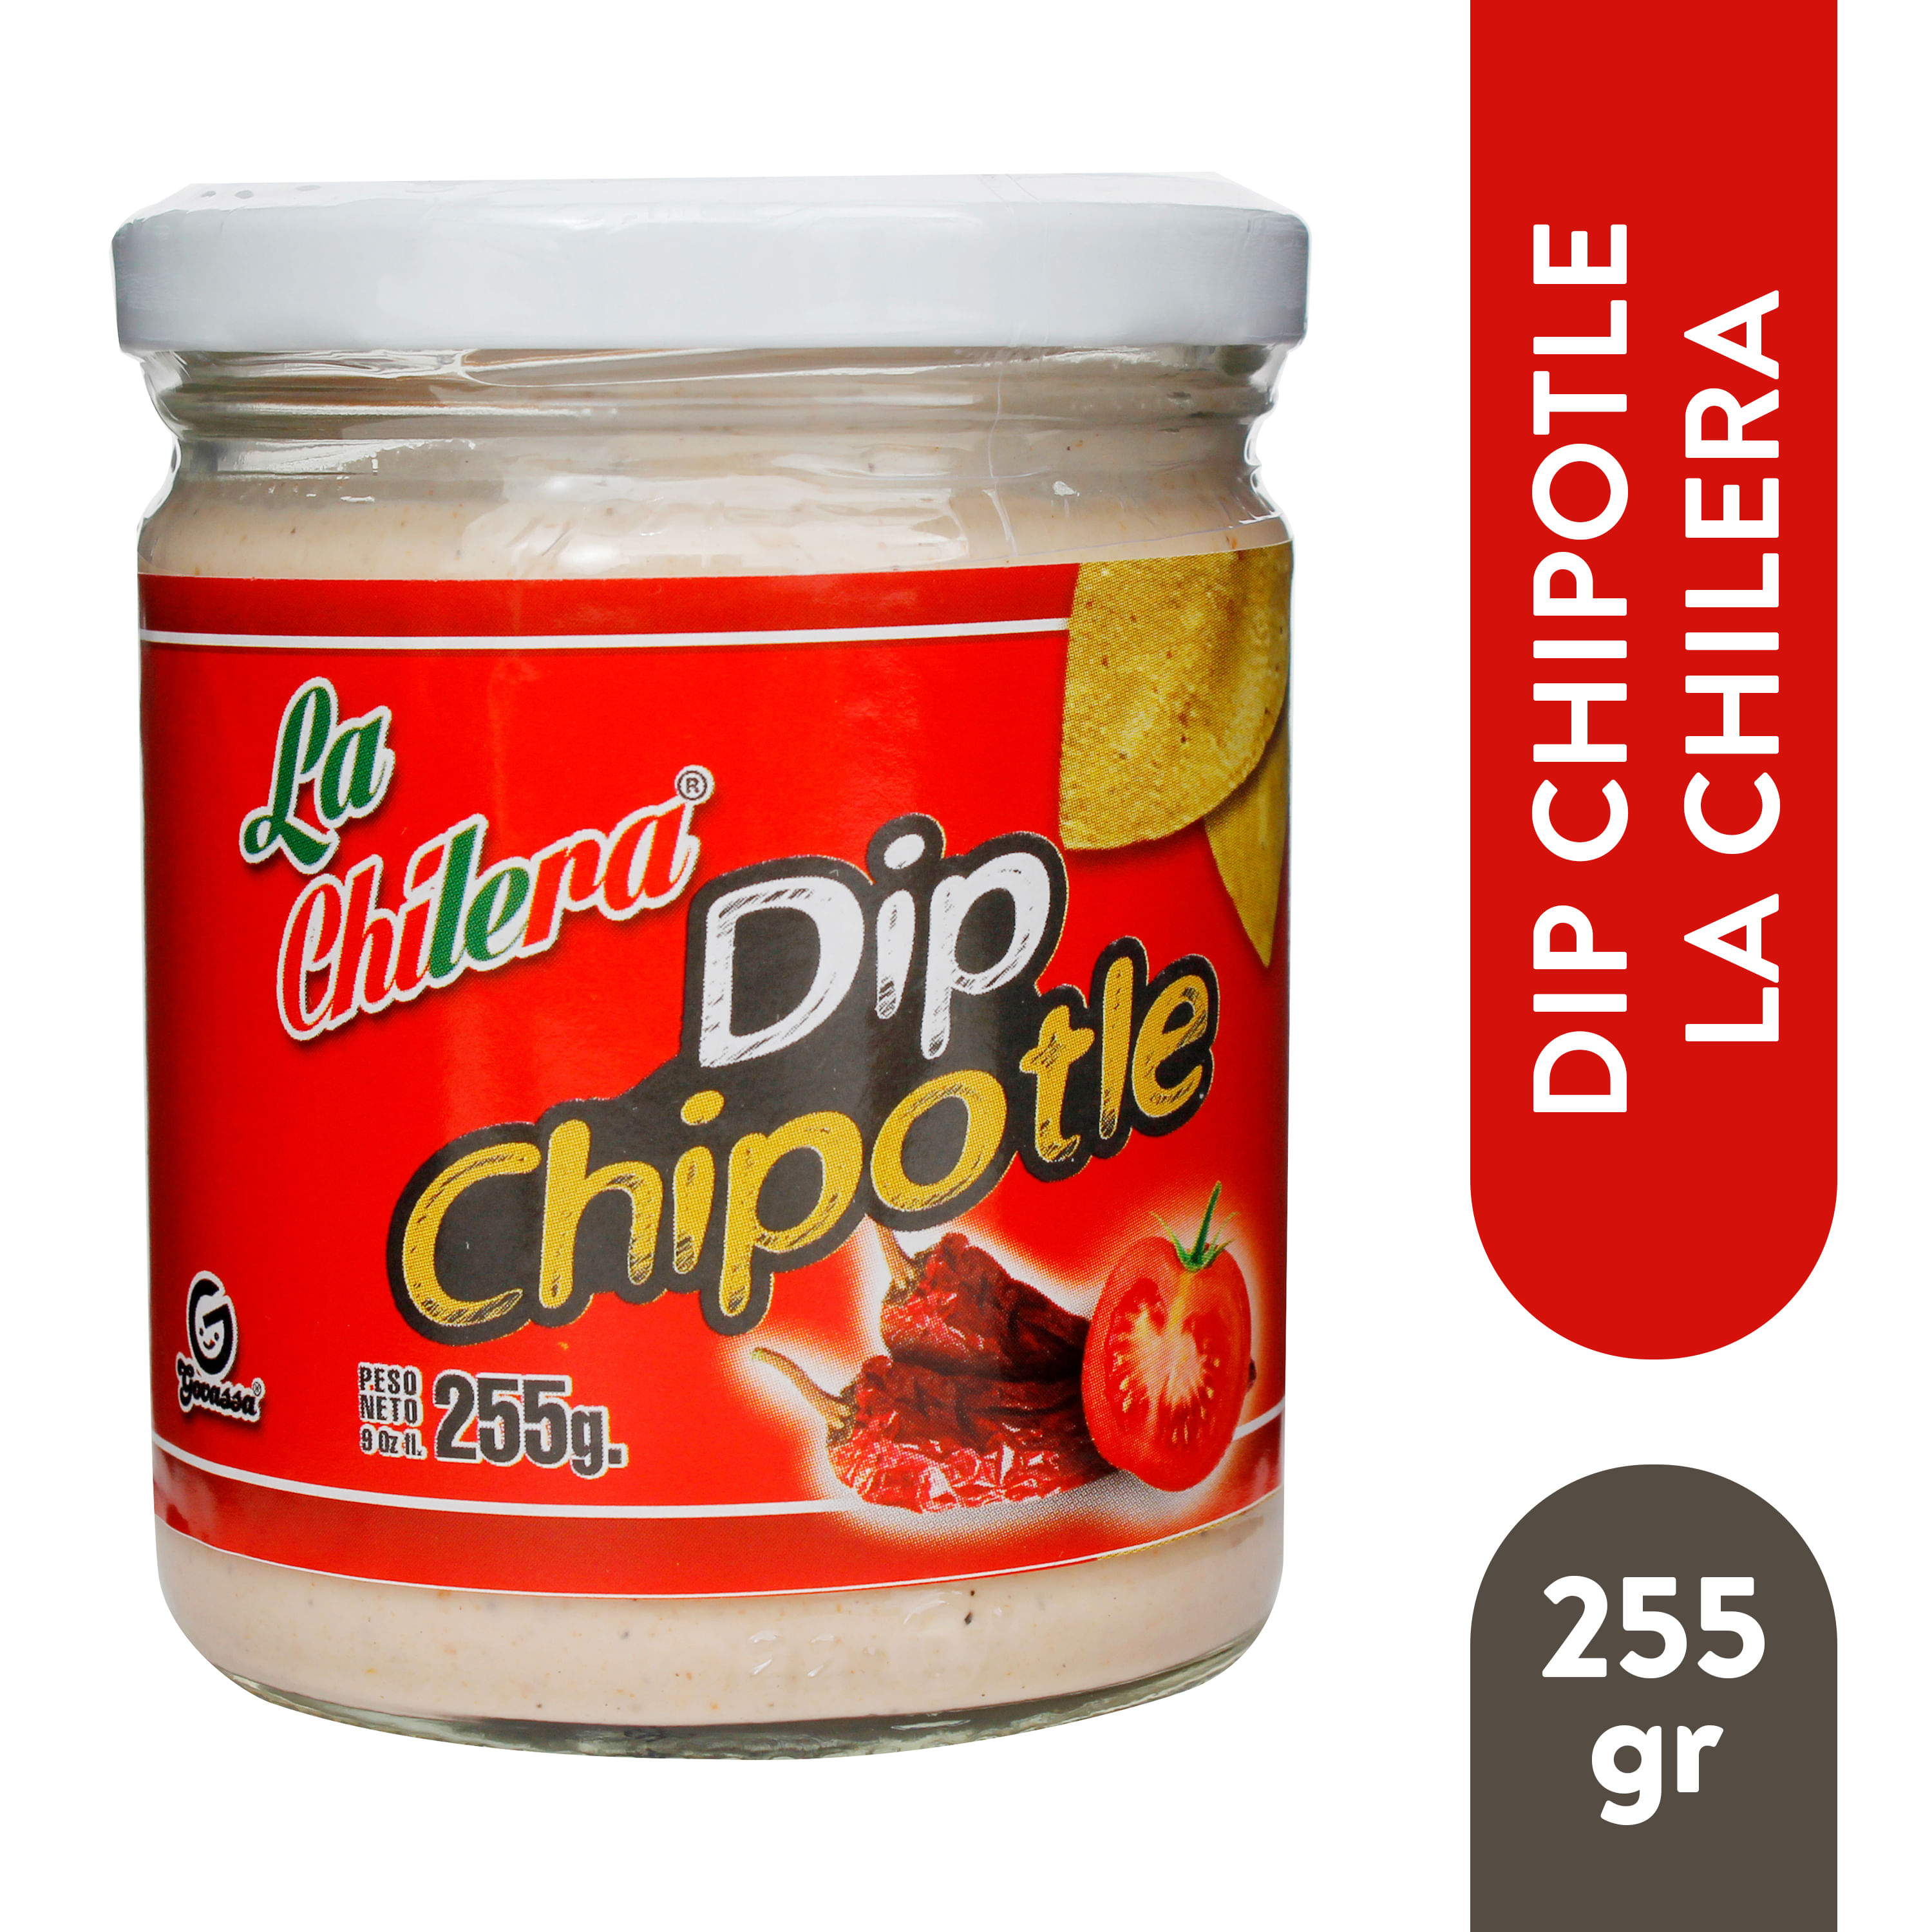 Aderezo-La-Chilera-Chipotle-Dip-255gr-1-30709